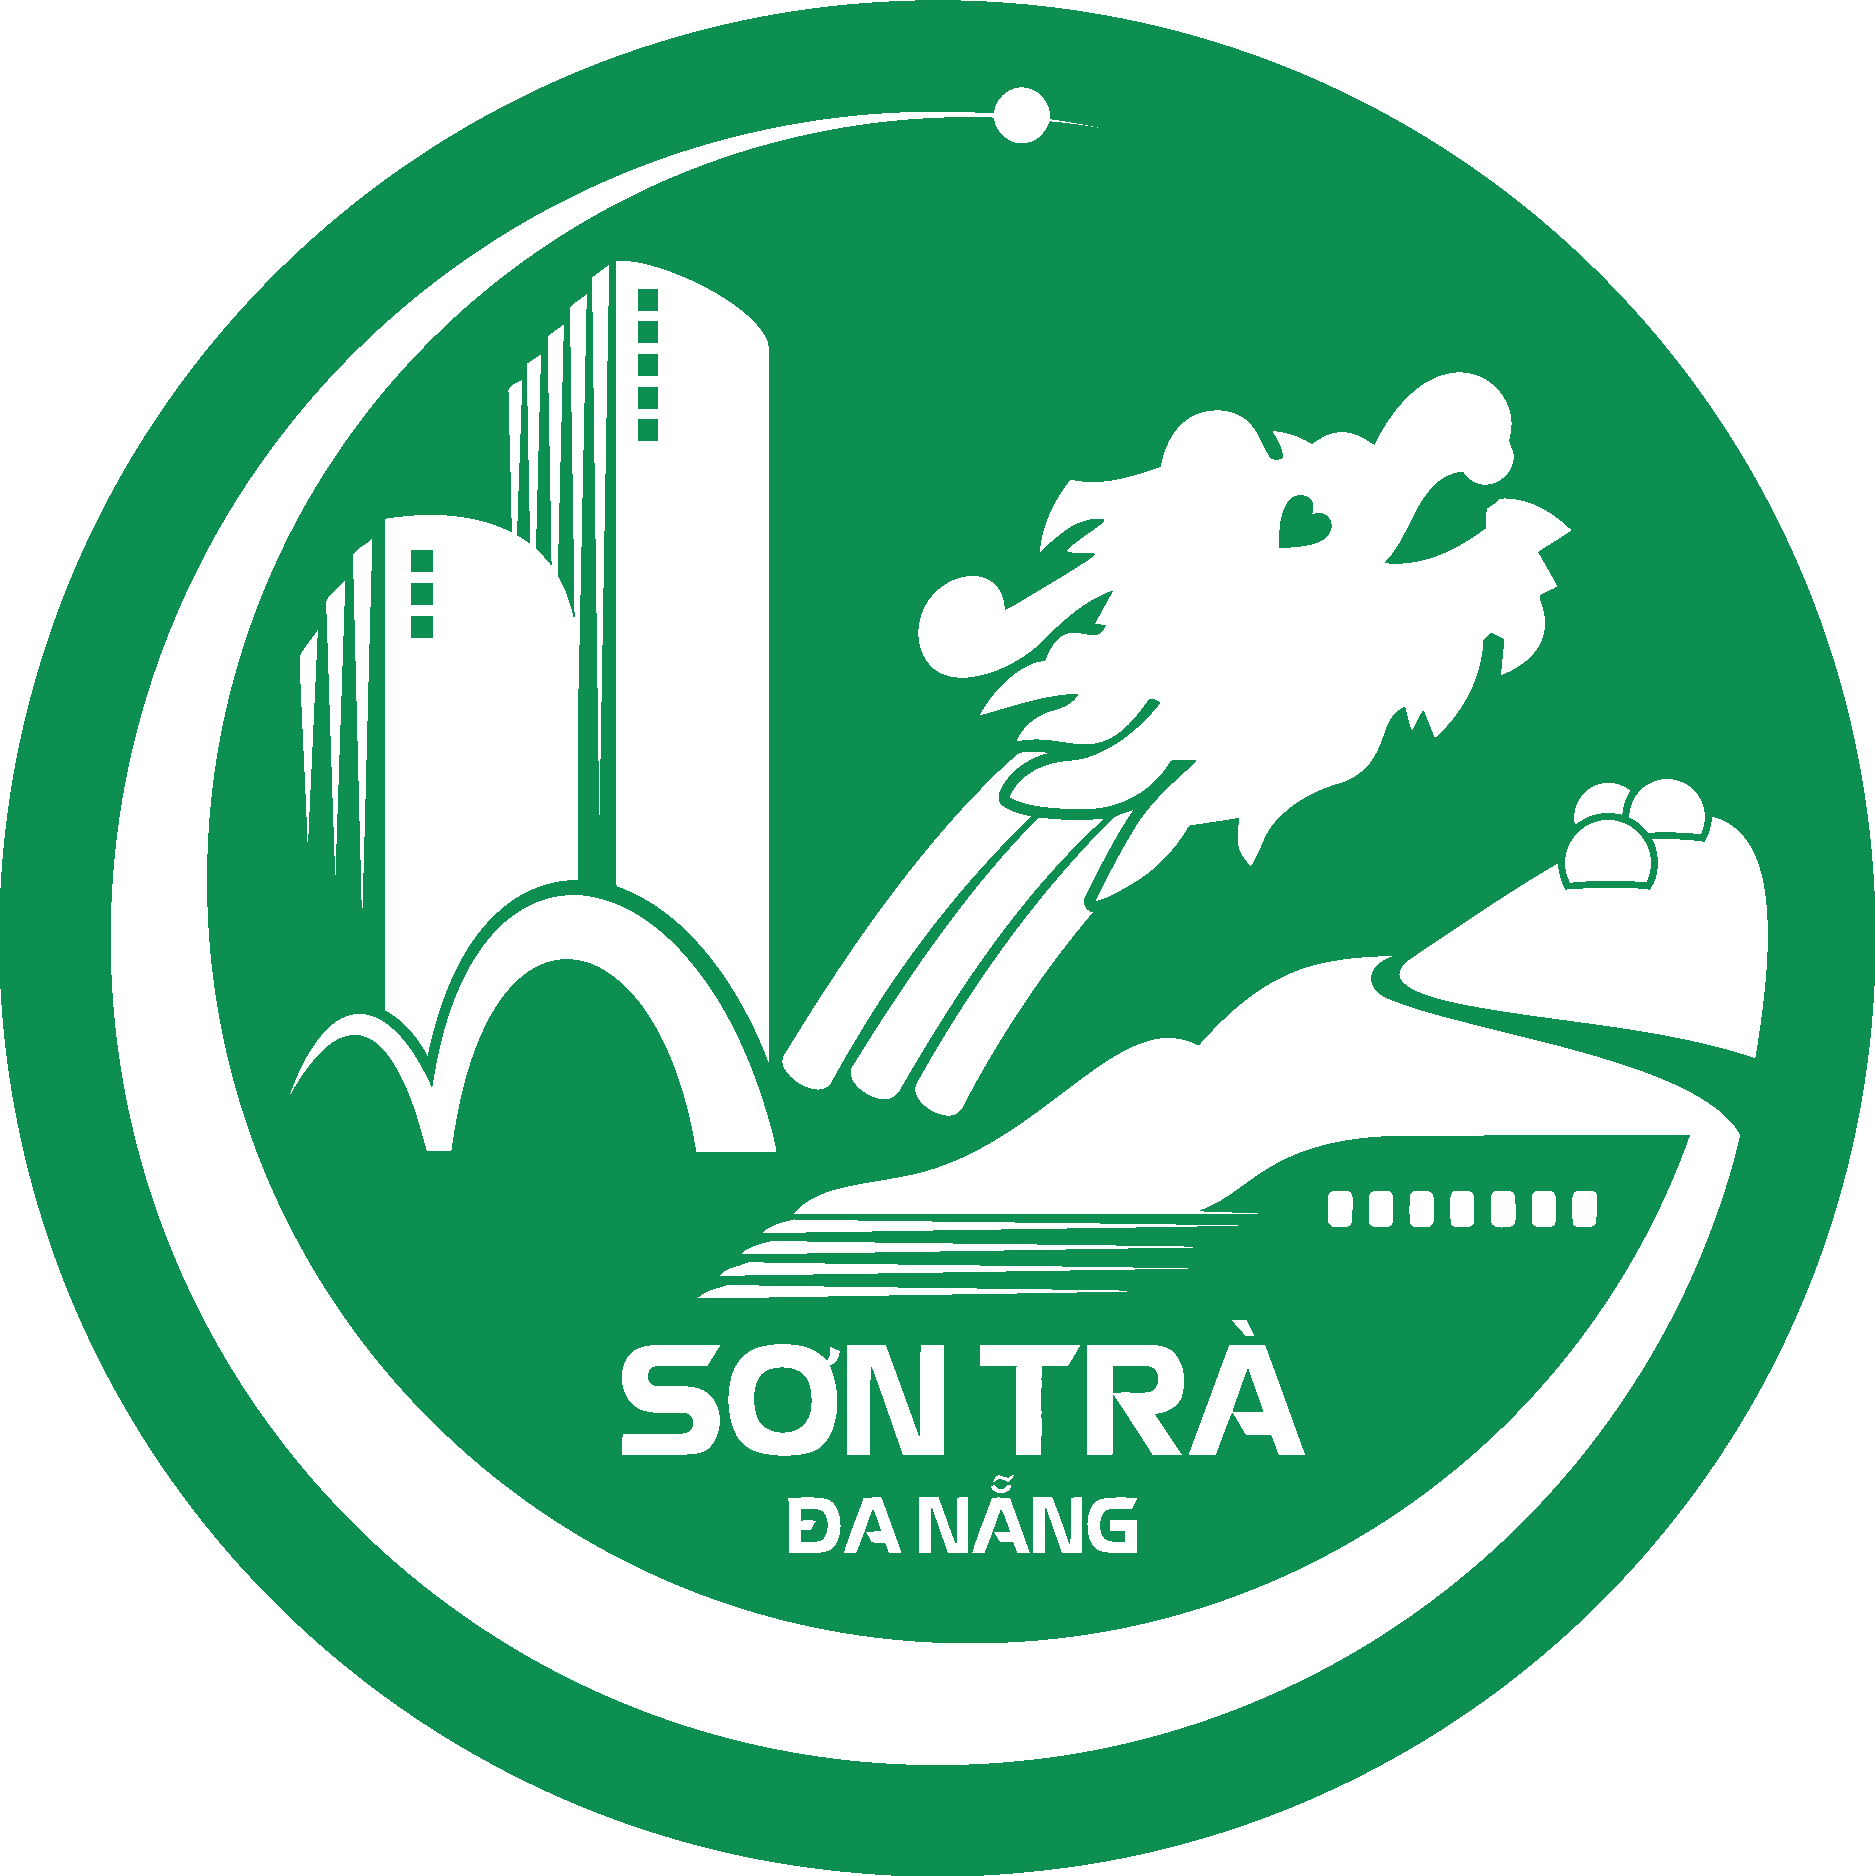 Sơn Trà District, Đà Nẵng, Vietnam Logo Vector